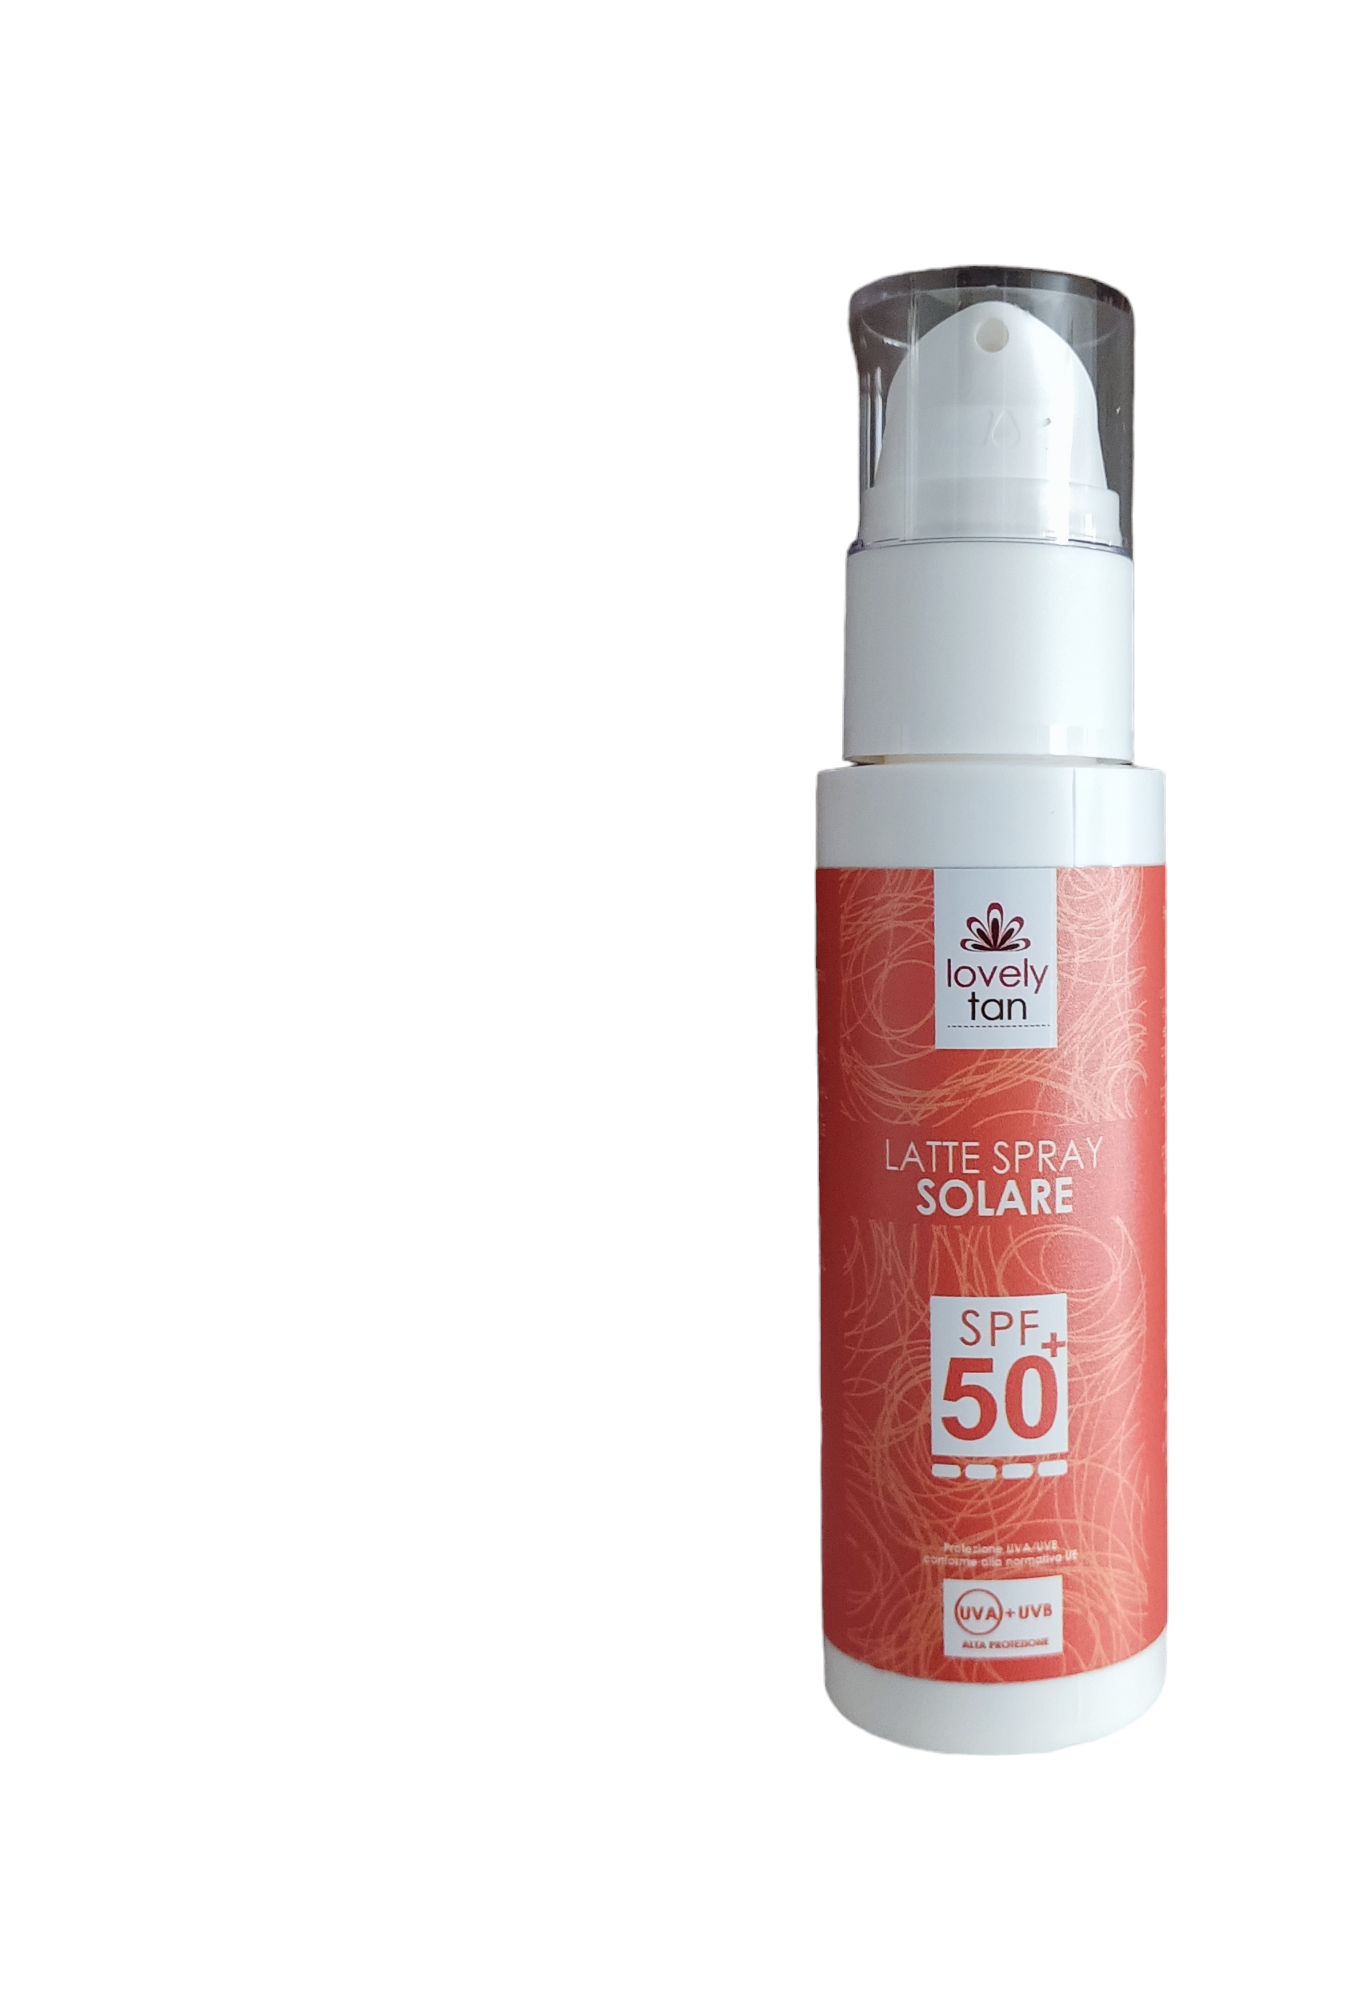 lovely tan Latte spray solare SPF 50 100 ml